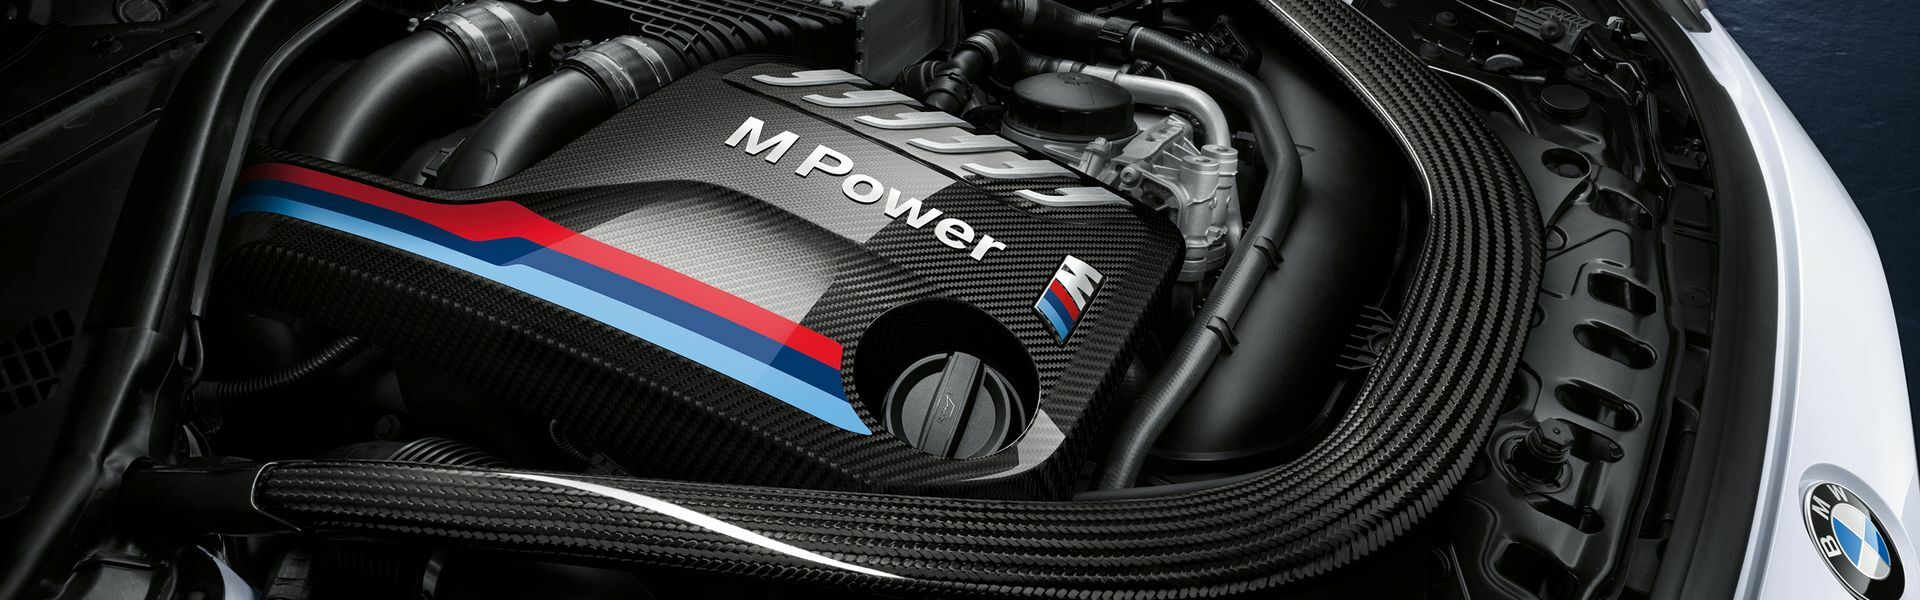 Zvýšení výkonu/ Softwarové úpravy/ Drobné performance díly pro automobil BMW X5M E70